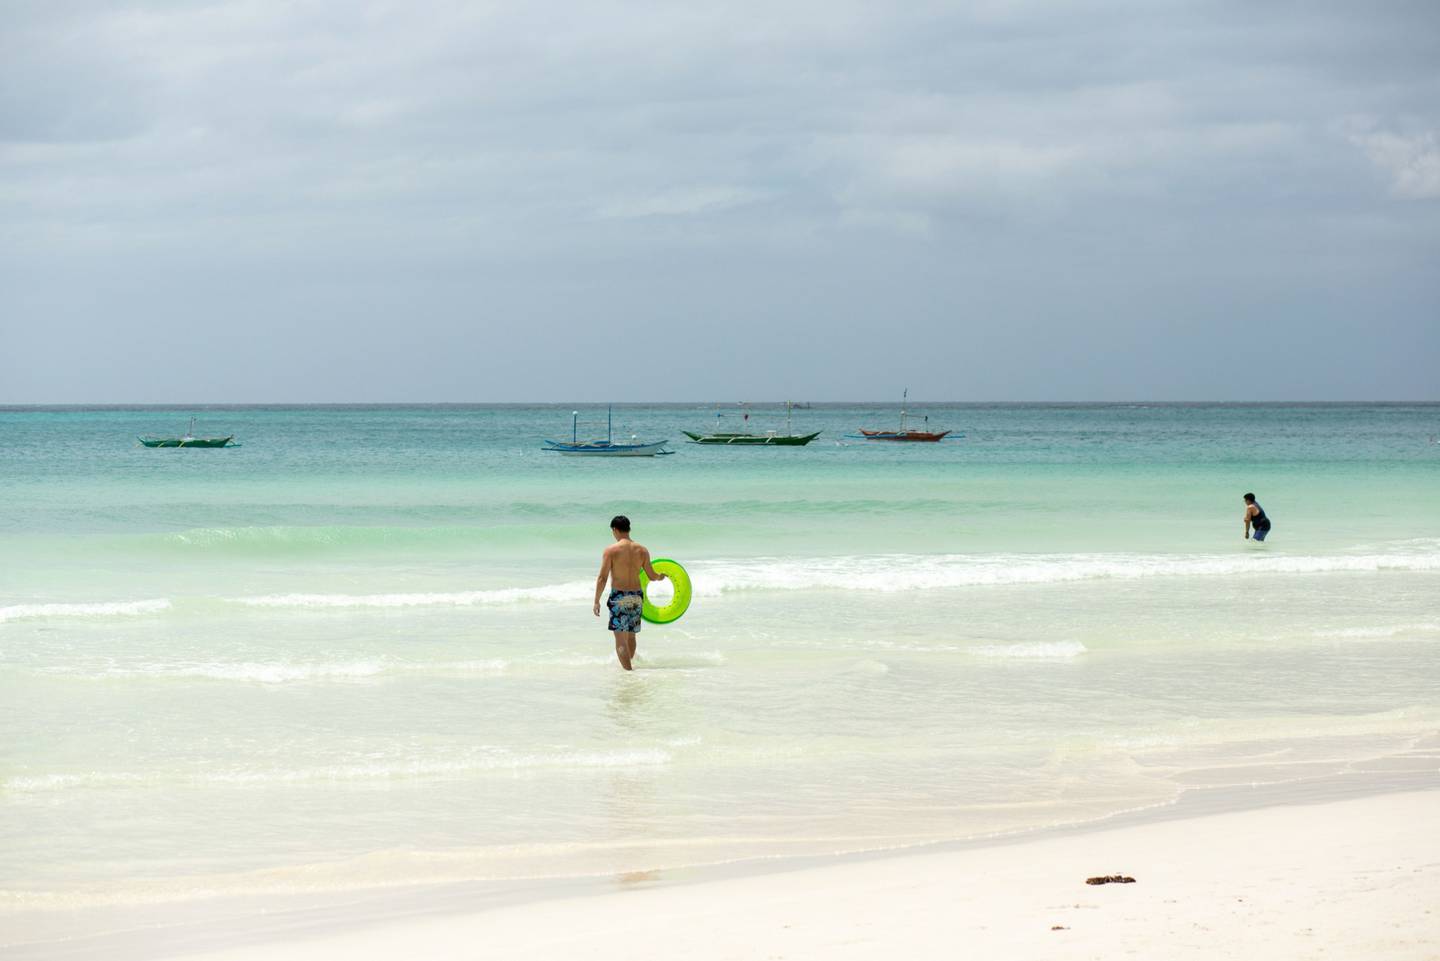 O paraíso ficou em segundo lugar entre as 25 melhores praias insulares do mundo